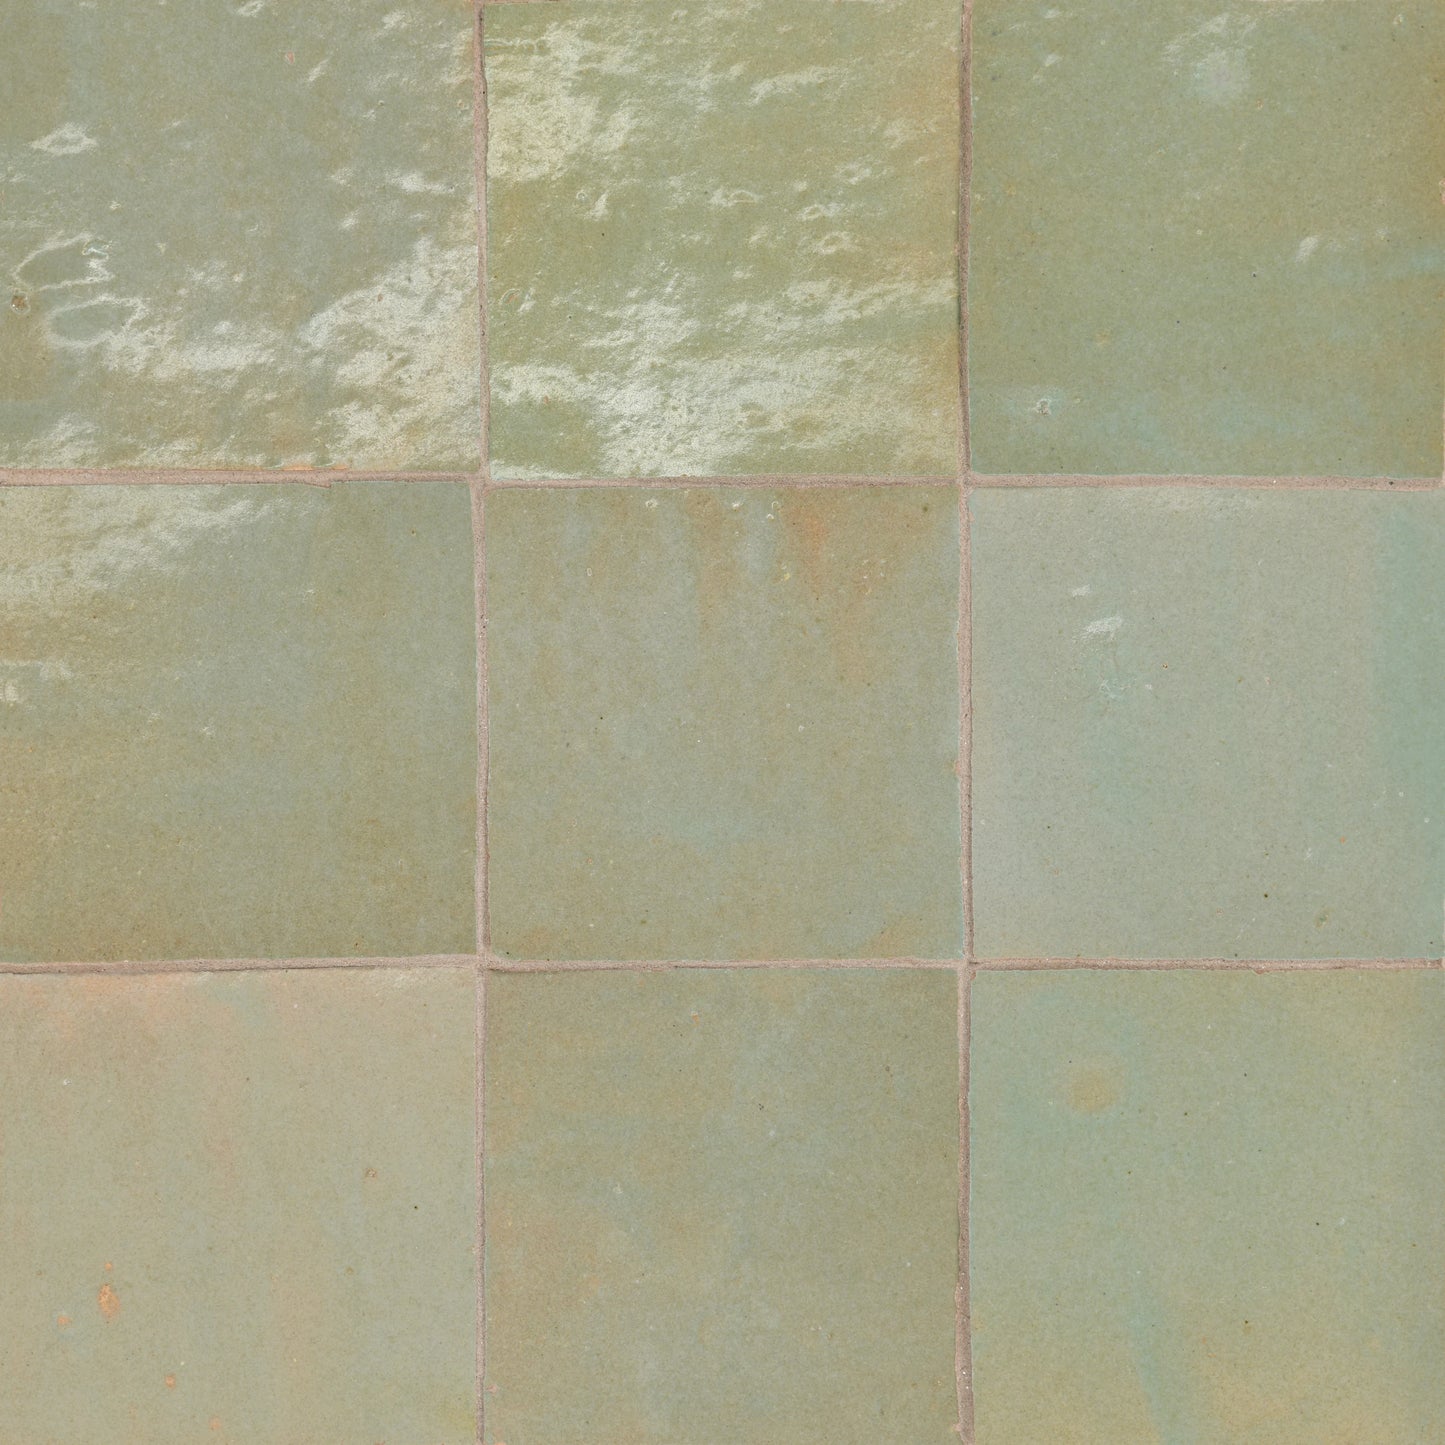 Tunis Zellige Tile Glossy in Aloe 4" x 4"